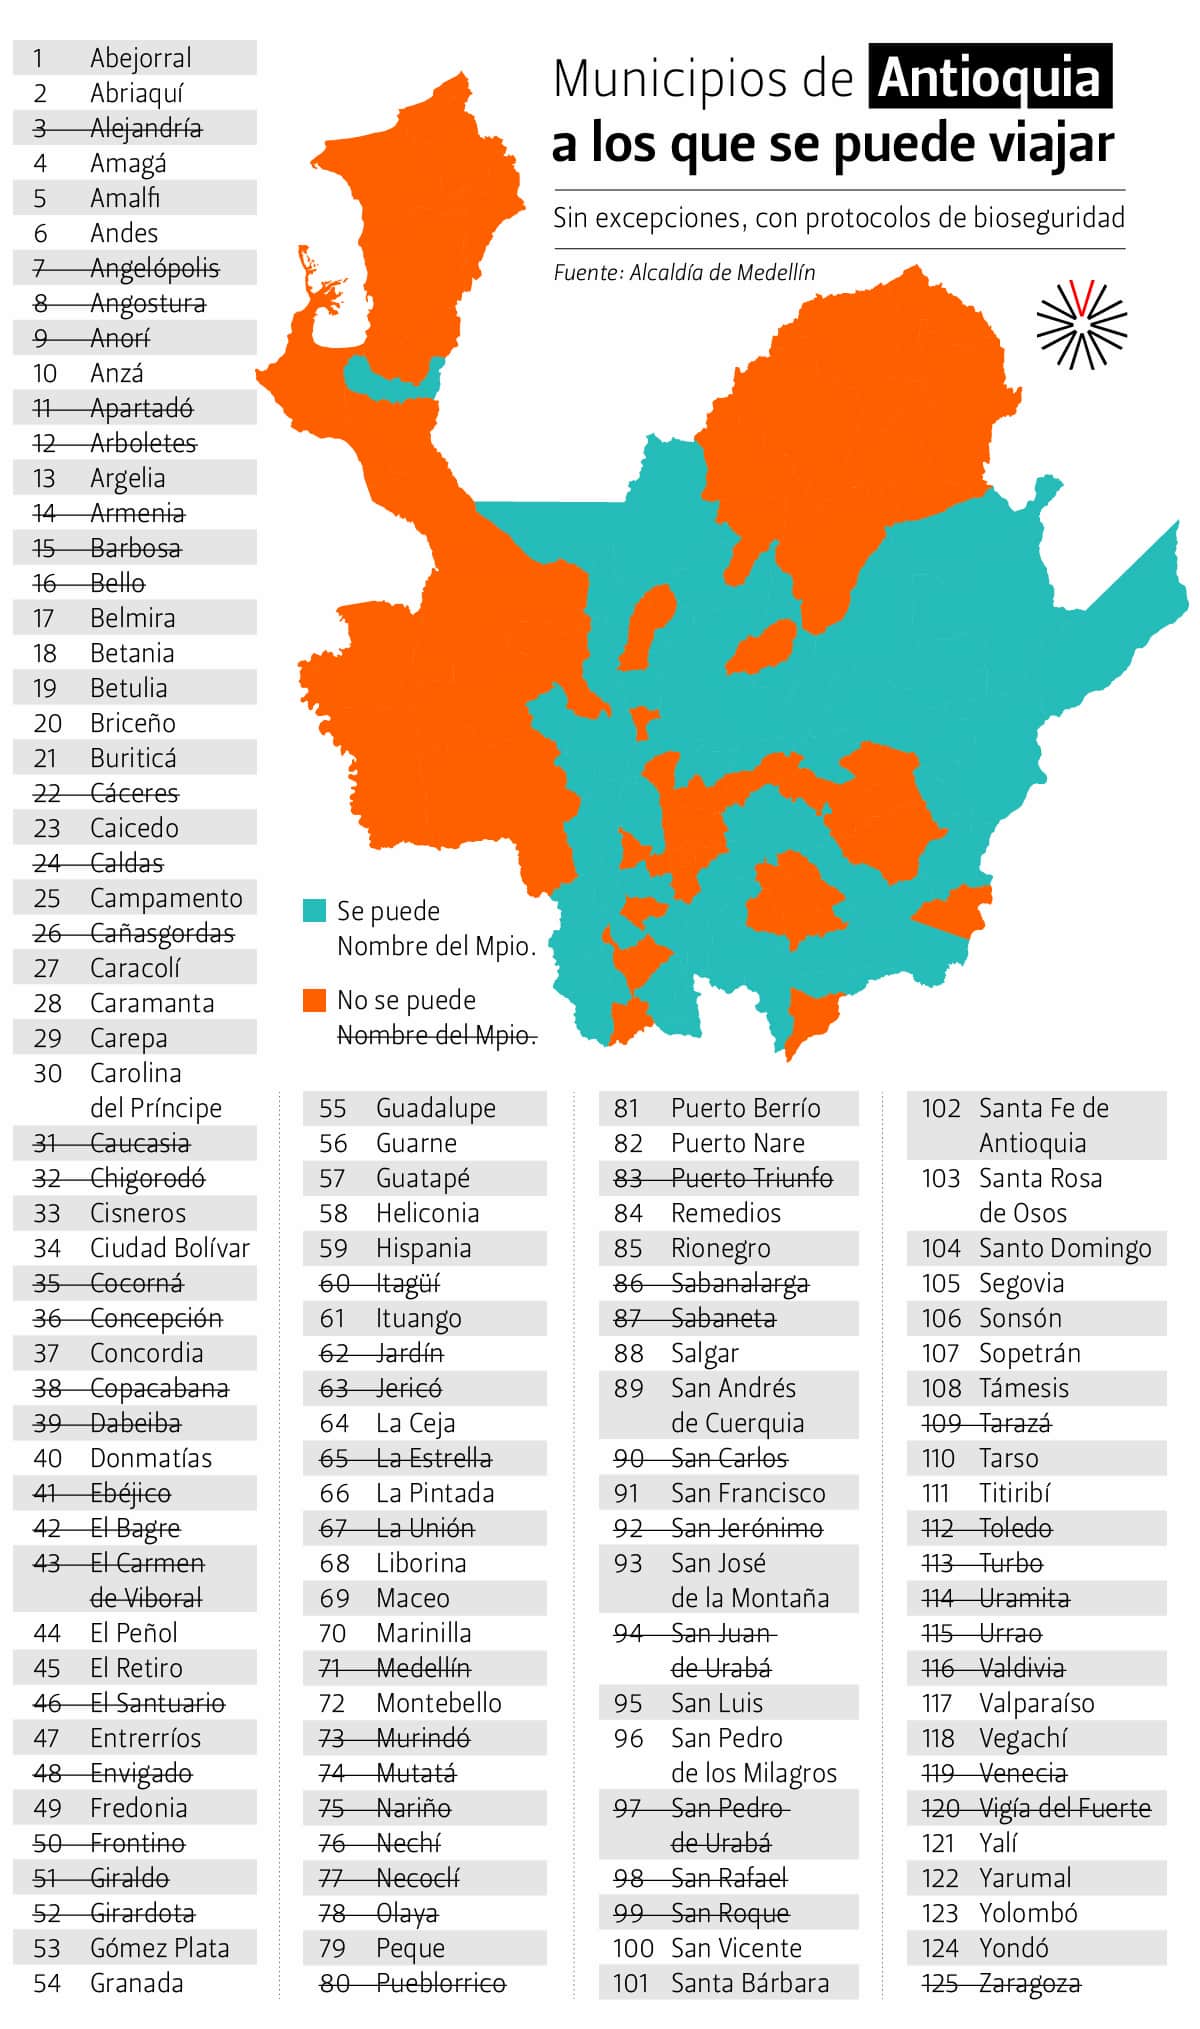 2020-08-26-Municipios de Antioquia a los que se puede viajar